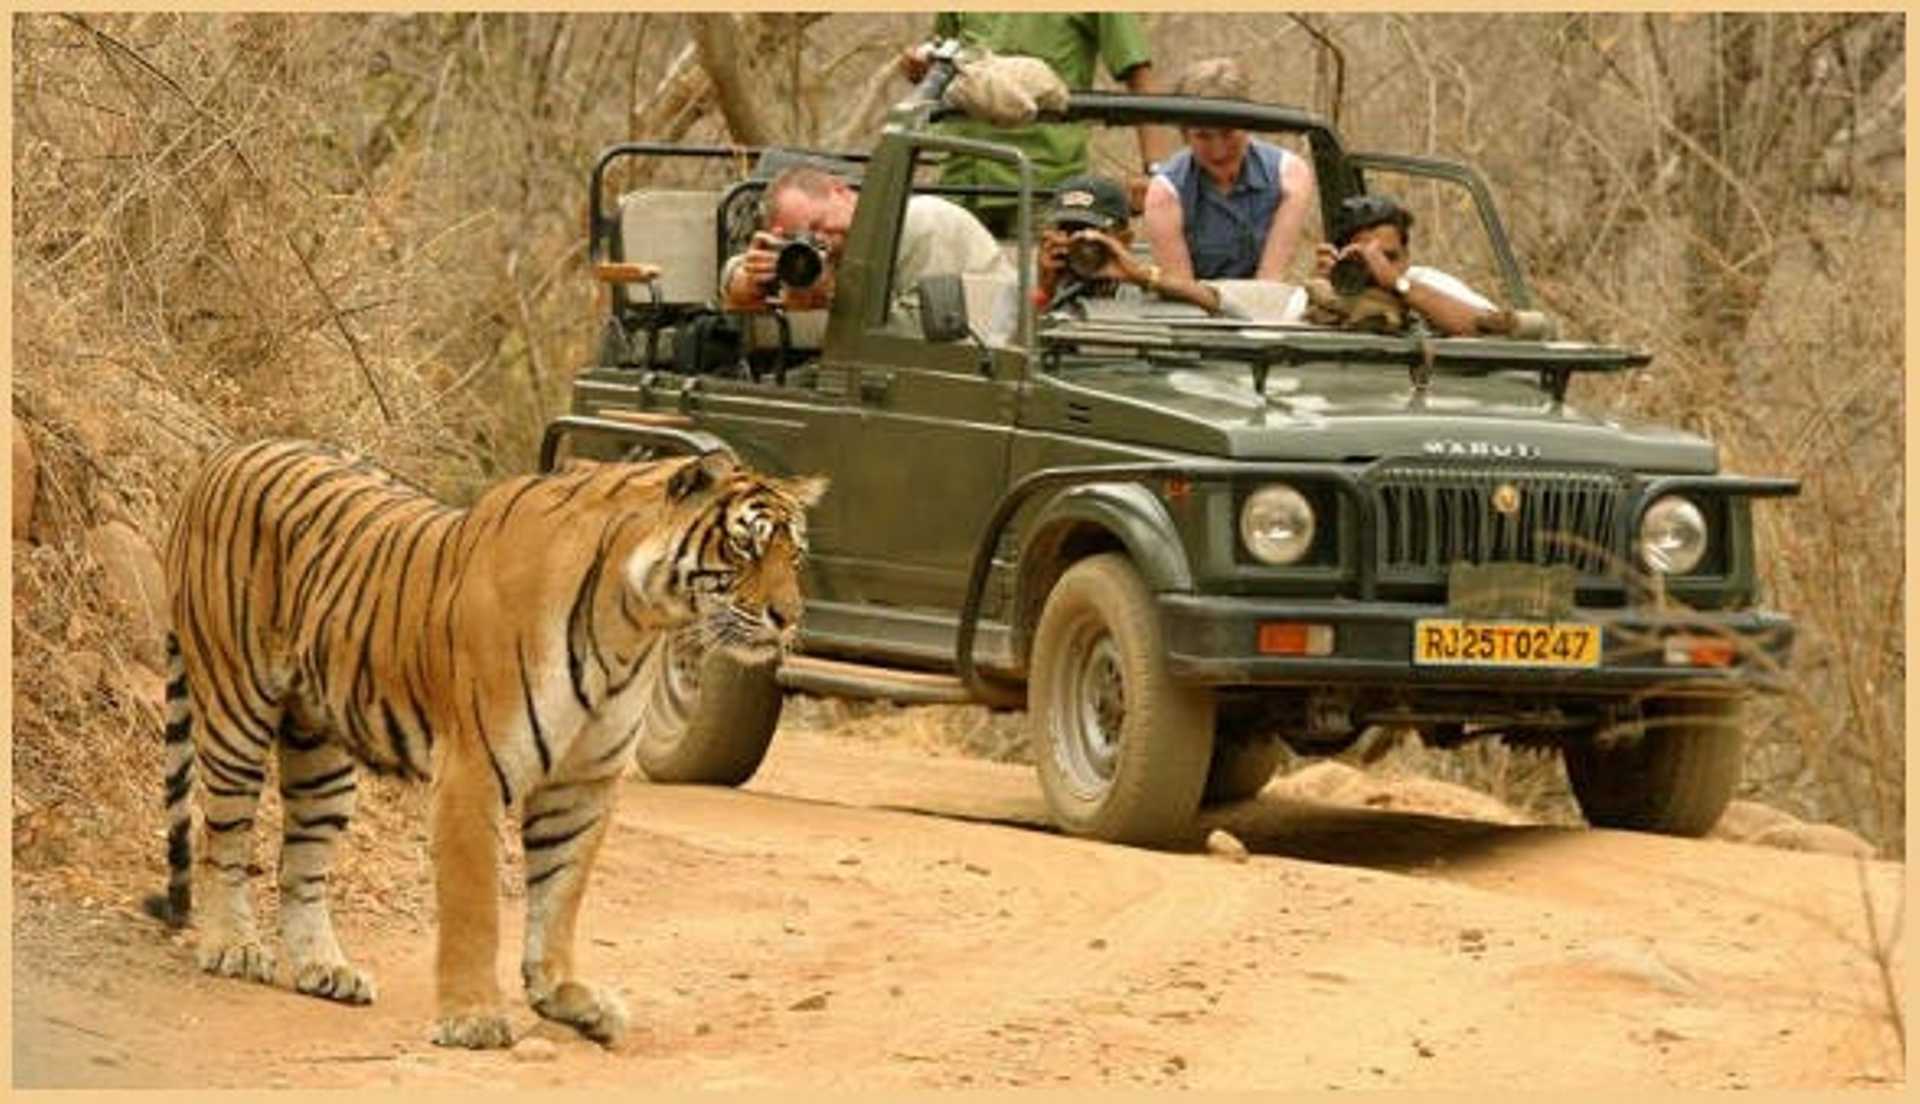 Golden Triangle India Tour with Udaipur & Wildlife Safari